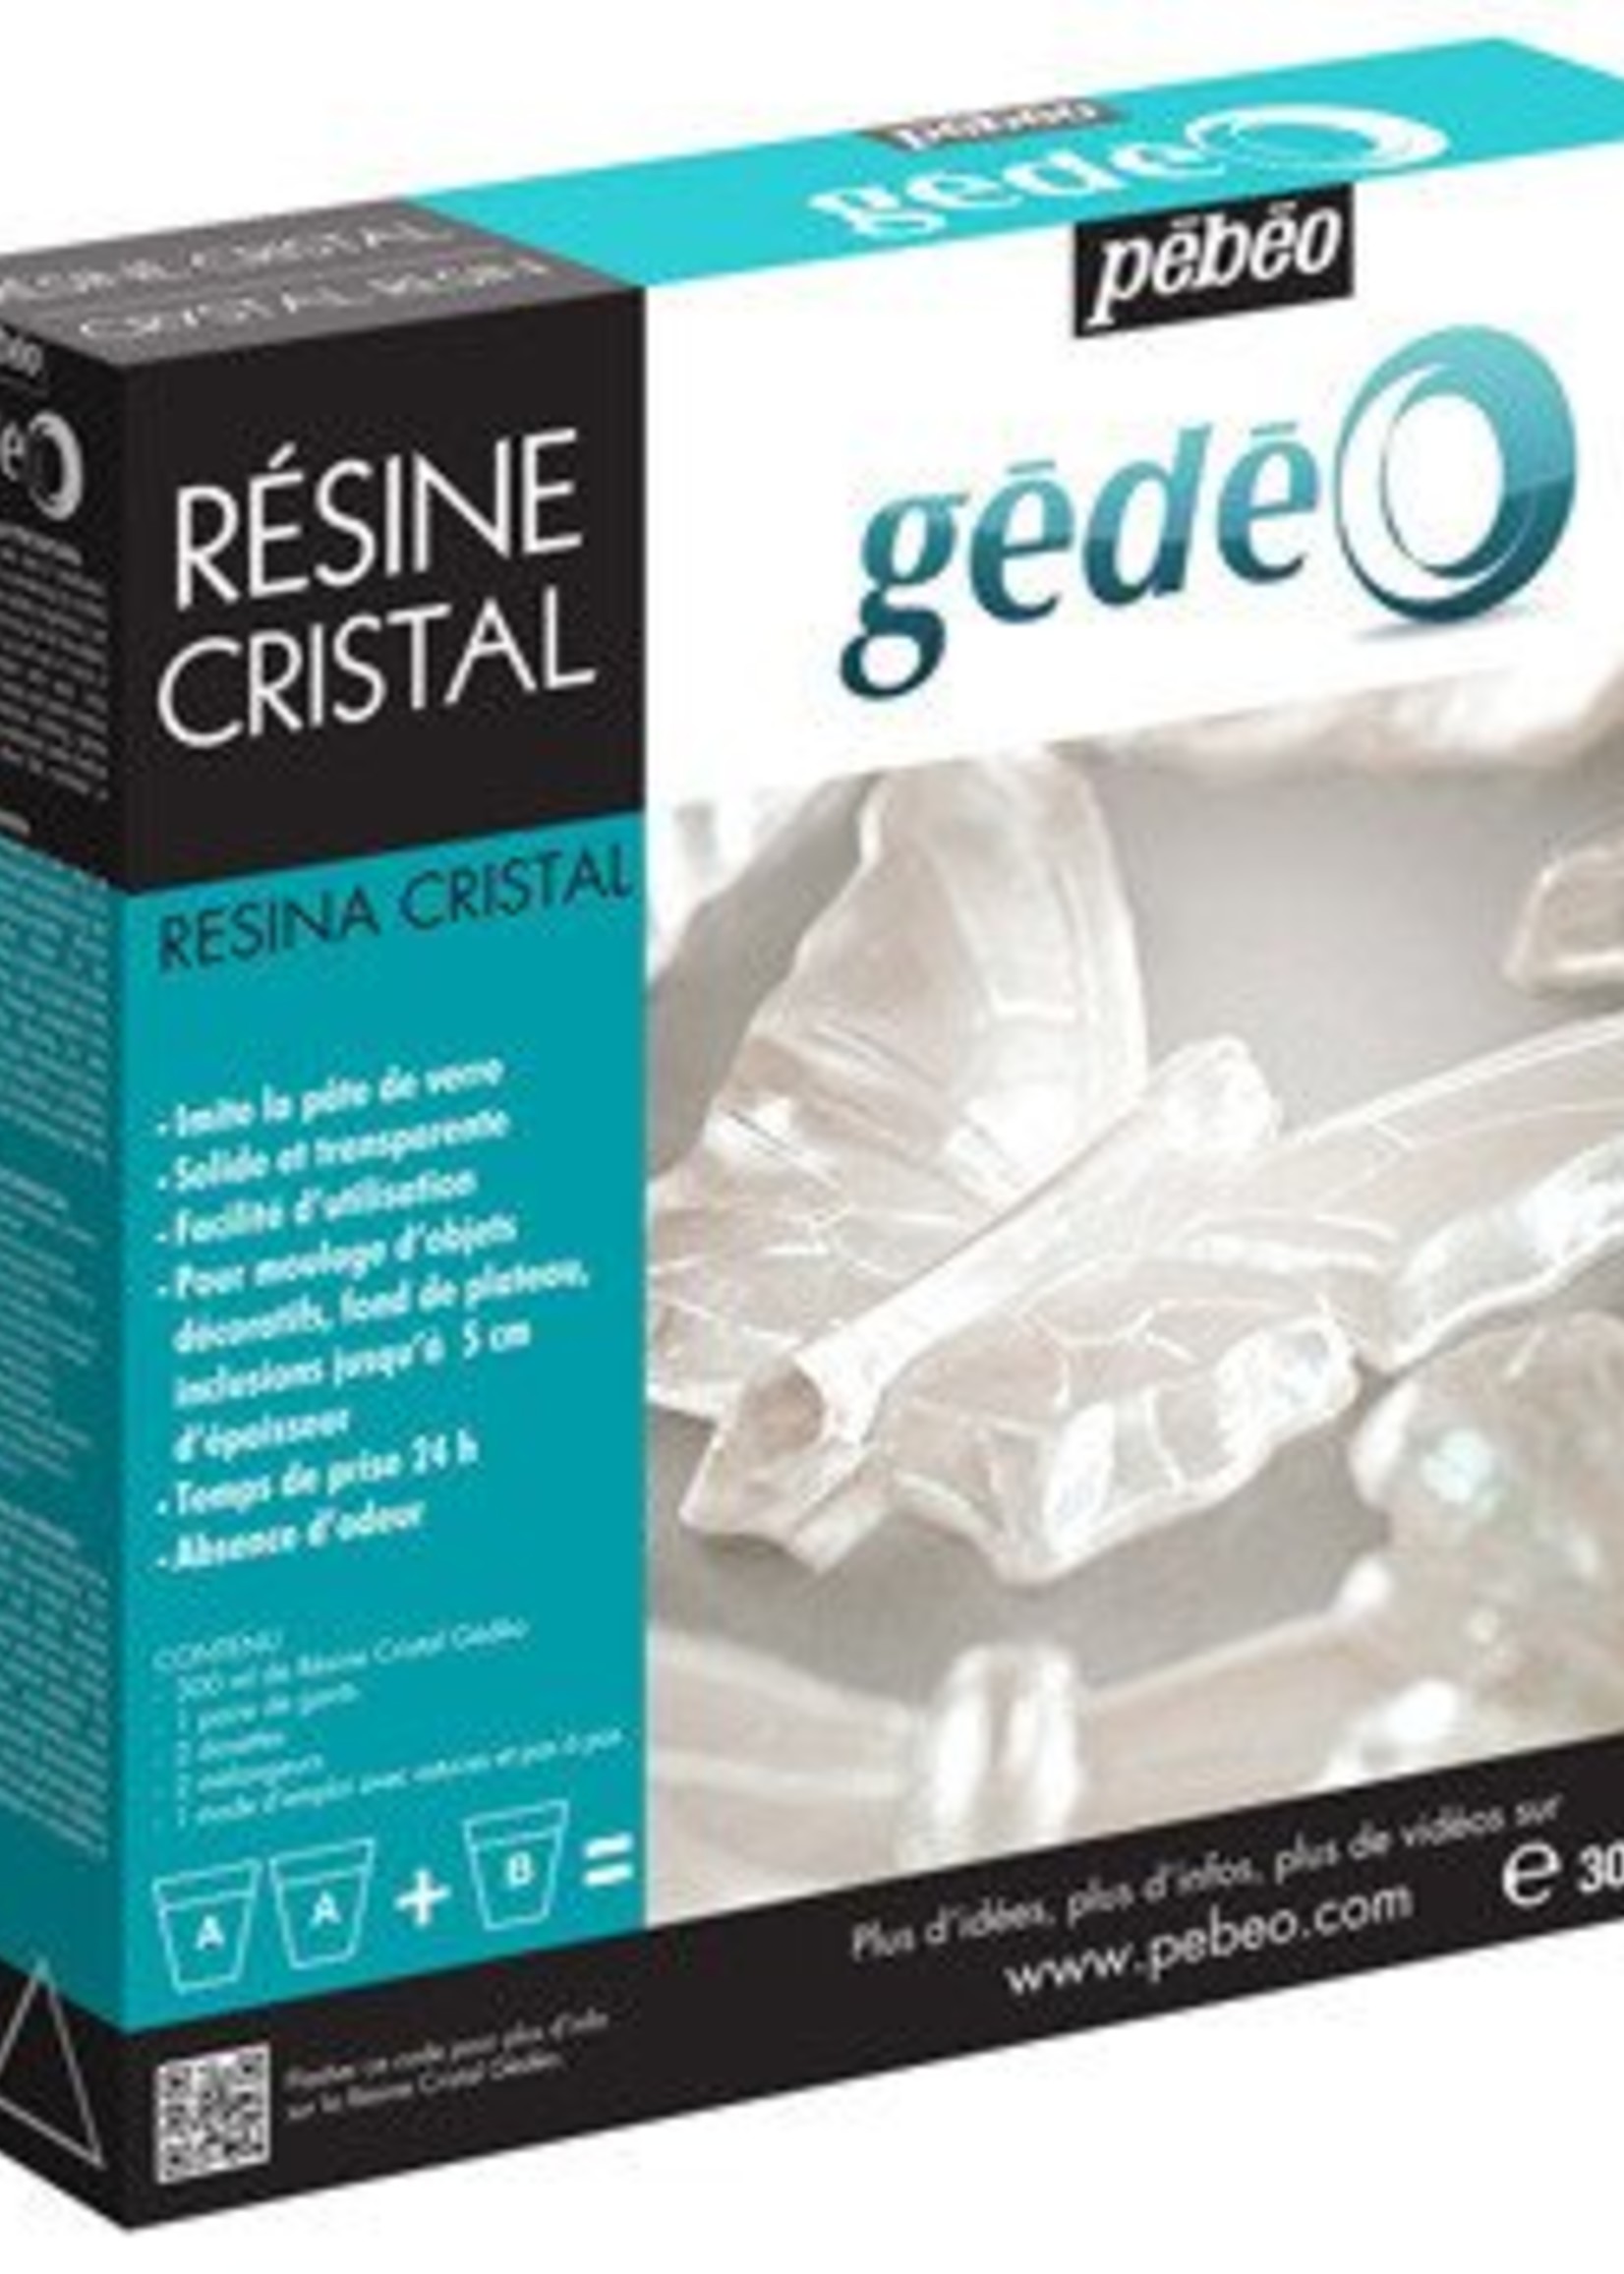 PEBEO PEBEO GEDEO CRYSTAL RESIN 300 ML